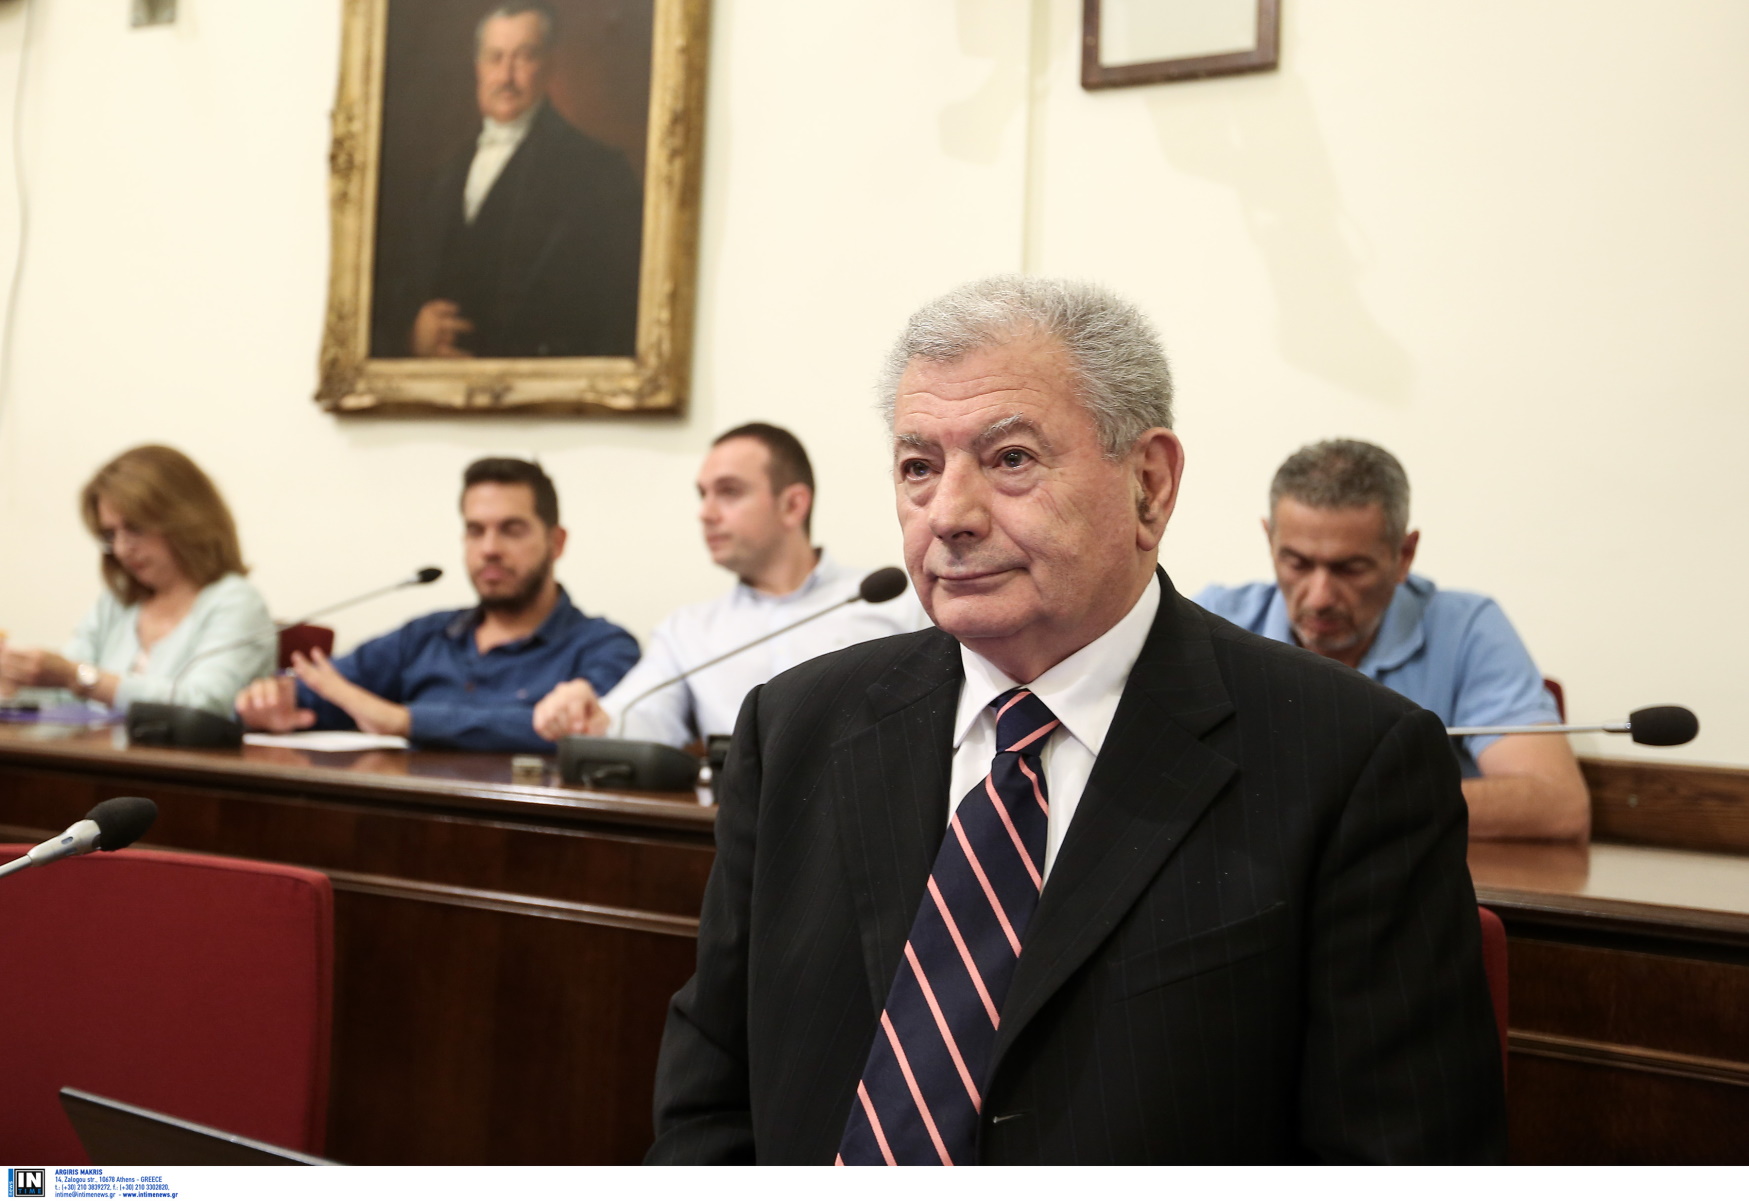 Σήφης Βαλυράκης: «Θάψιμο» της υπόθεσης καταγγέλλει η οικογένεια, 2 χρόνια από τη δολοφονία του πρώην υπουργού